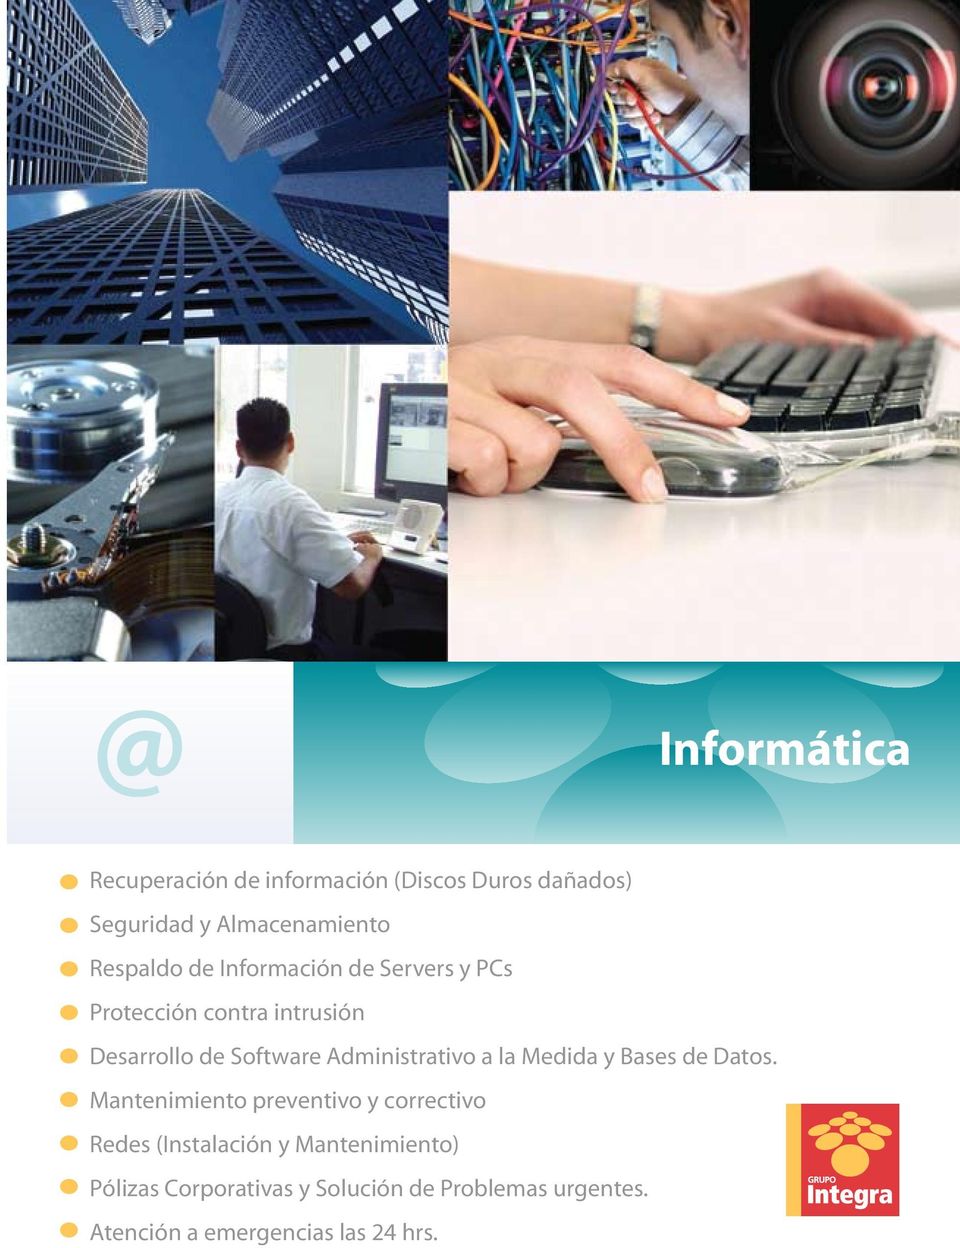 Administrativo a la Medida y Bases de Datos.